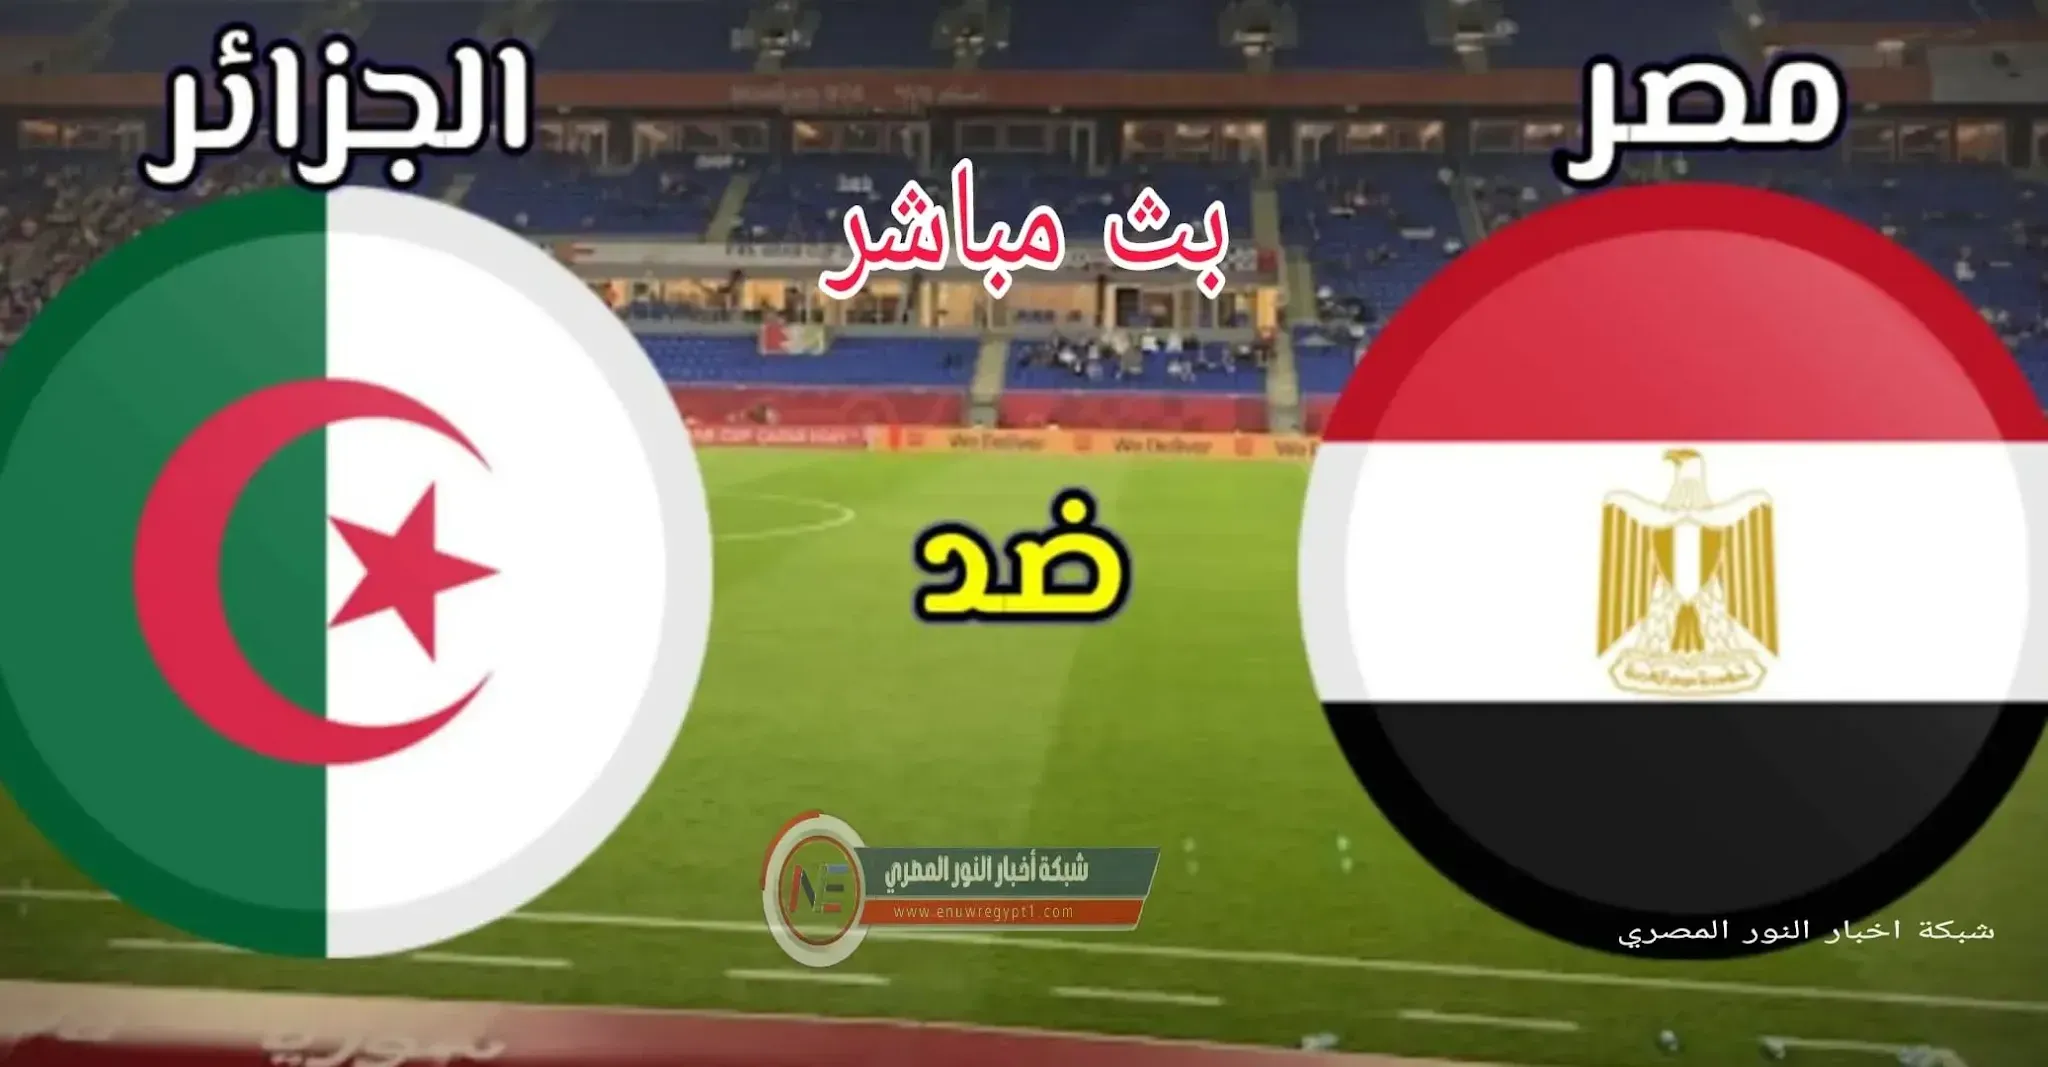 فيديو اهداف مباراة مصر و الجزائر في القمة العربية اليوم 07-12-2021 في كأس العرب